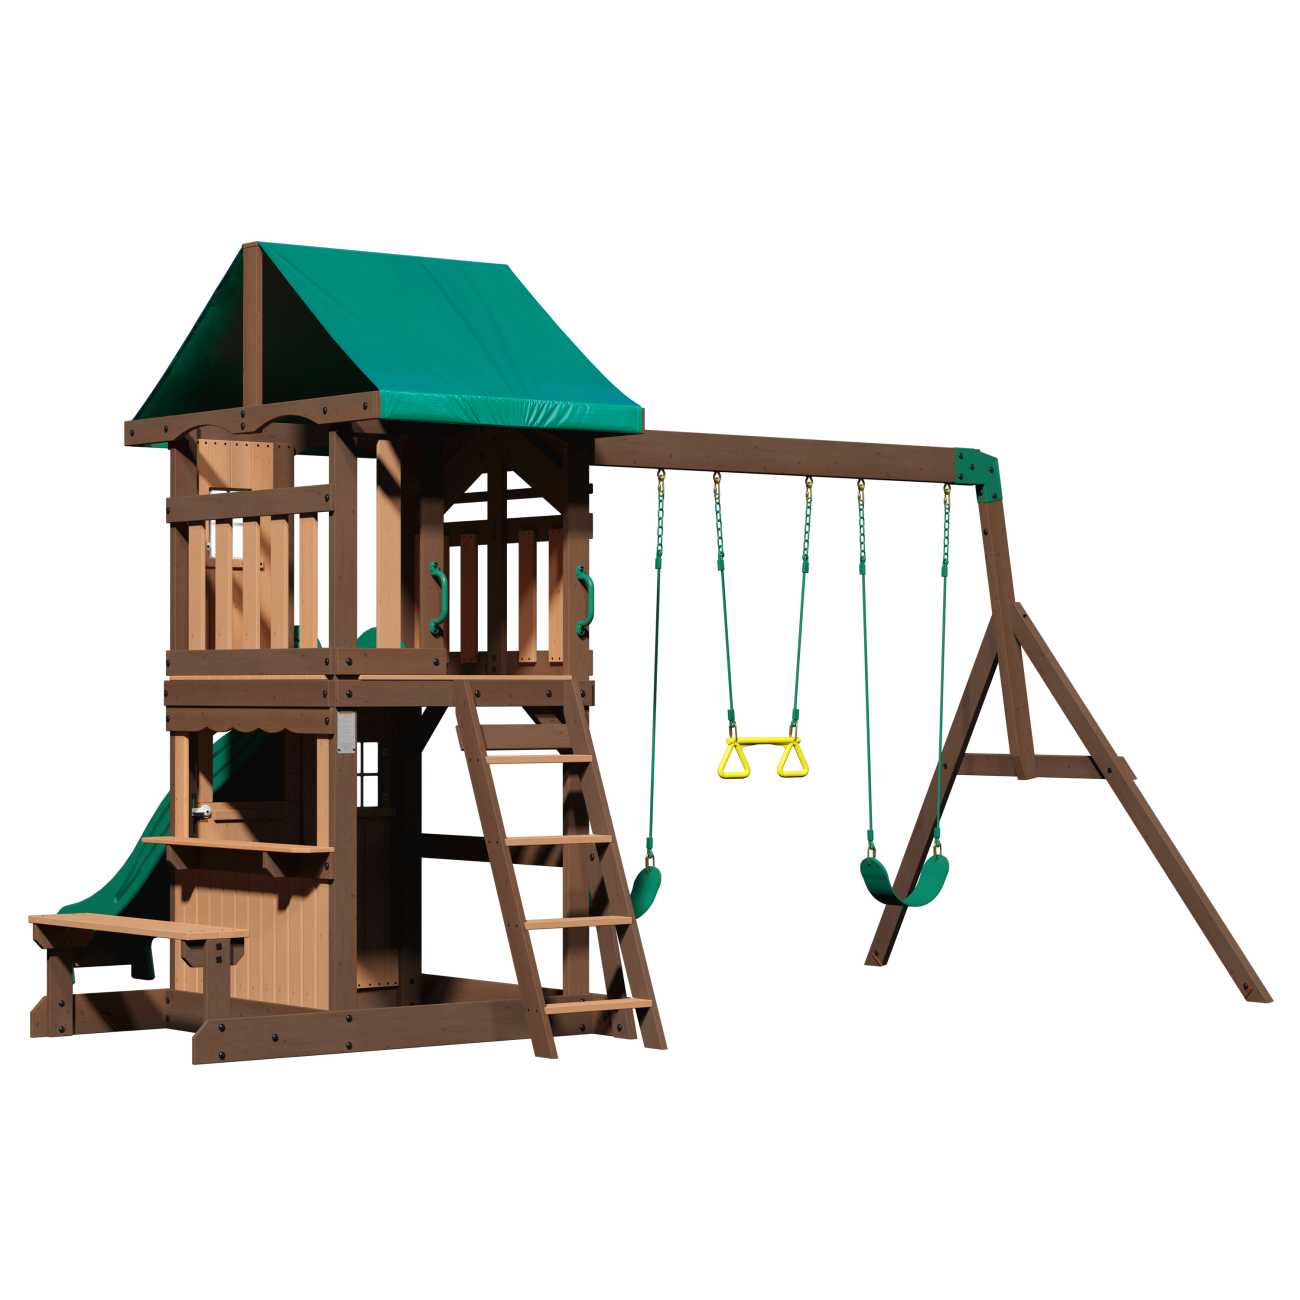 Backyard Spielturm Lakewood, Spielturm mit Schaukel für Kinder im Garten